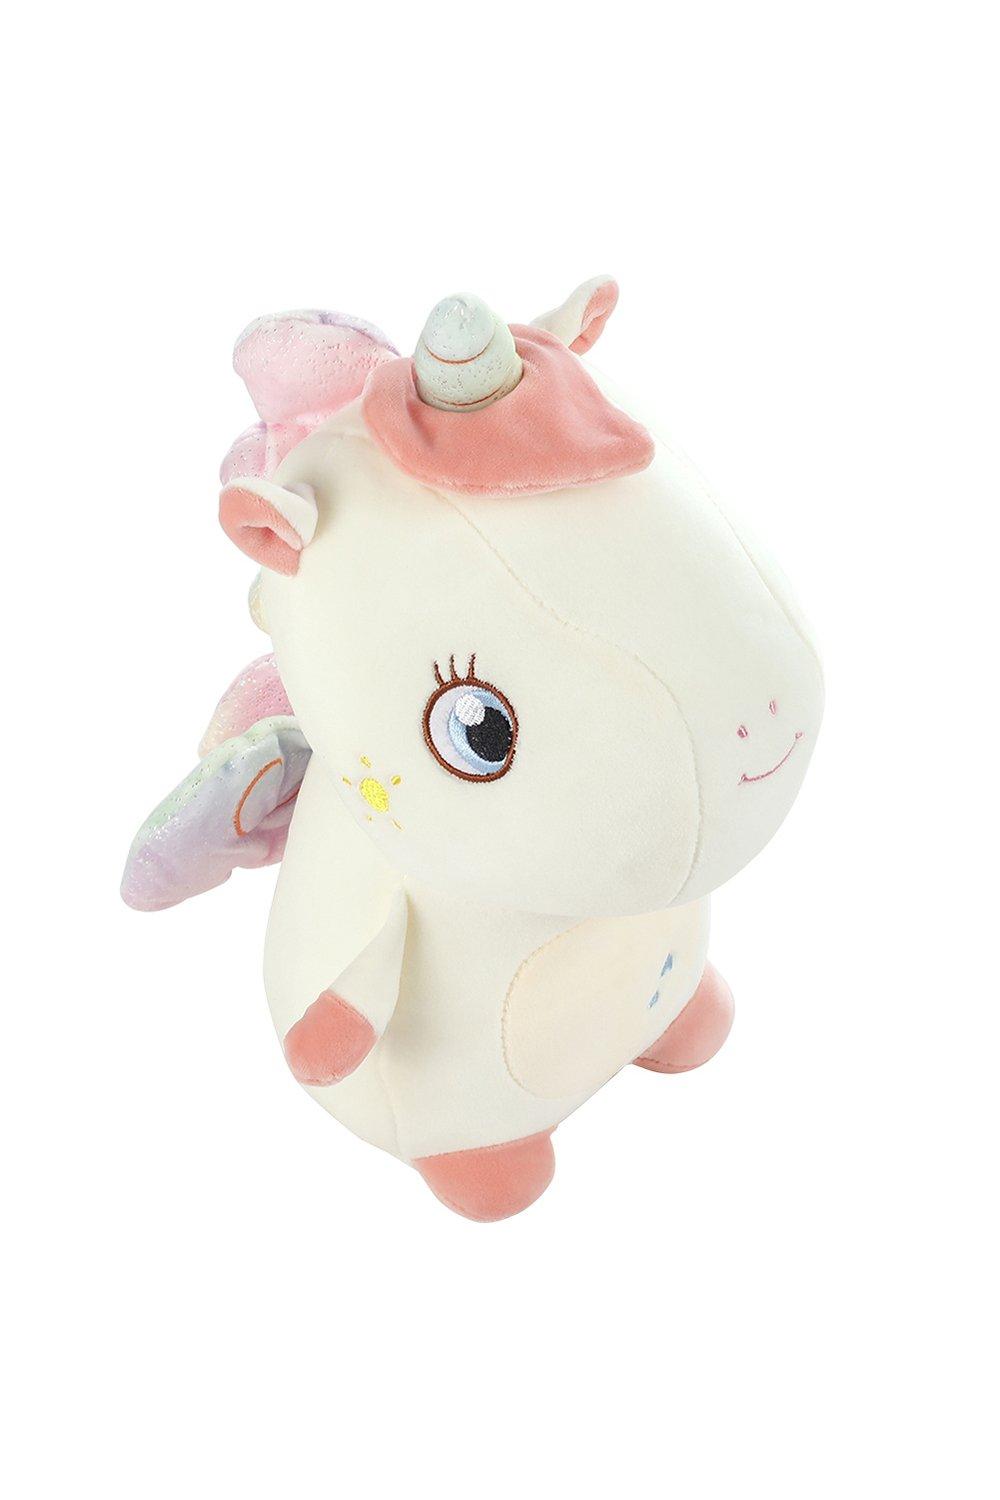 50cm White Unicorn Soft Plush Animal Toy For Valentine's Day Gift